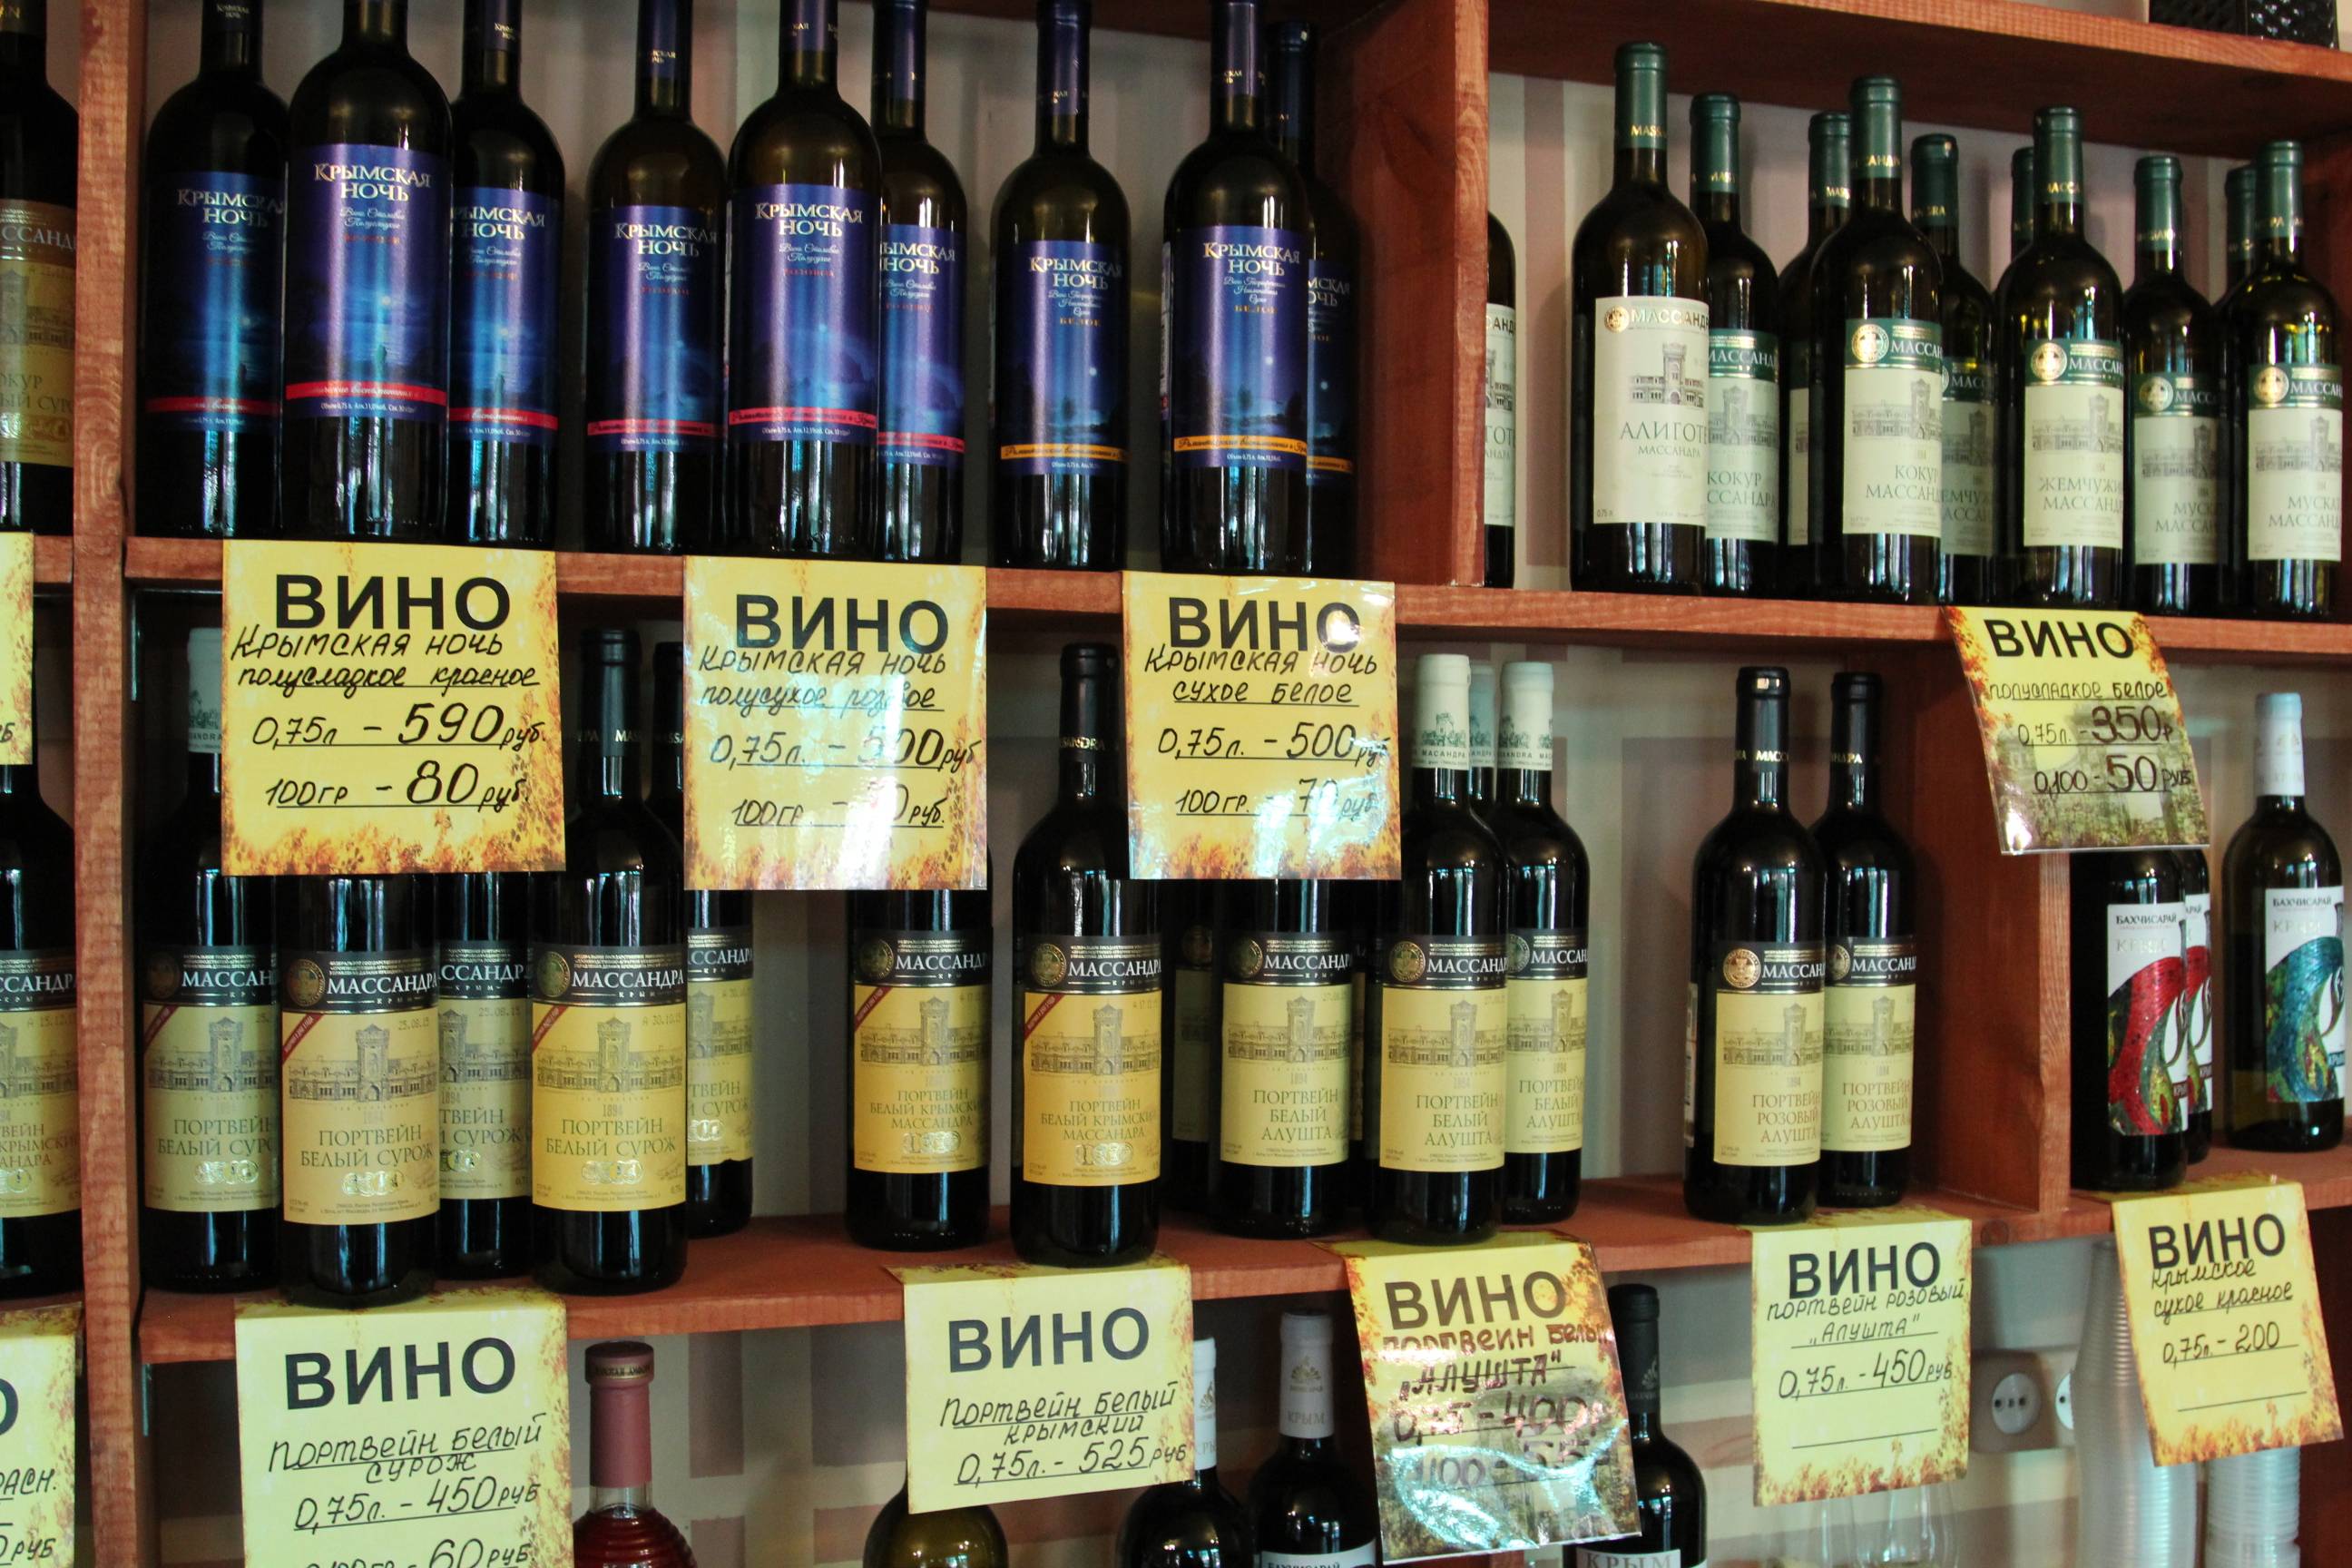 Где Купить Хорошее Крымское Вино